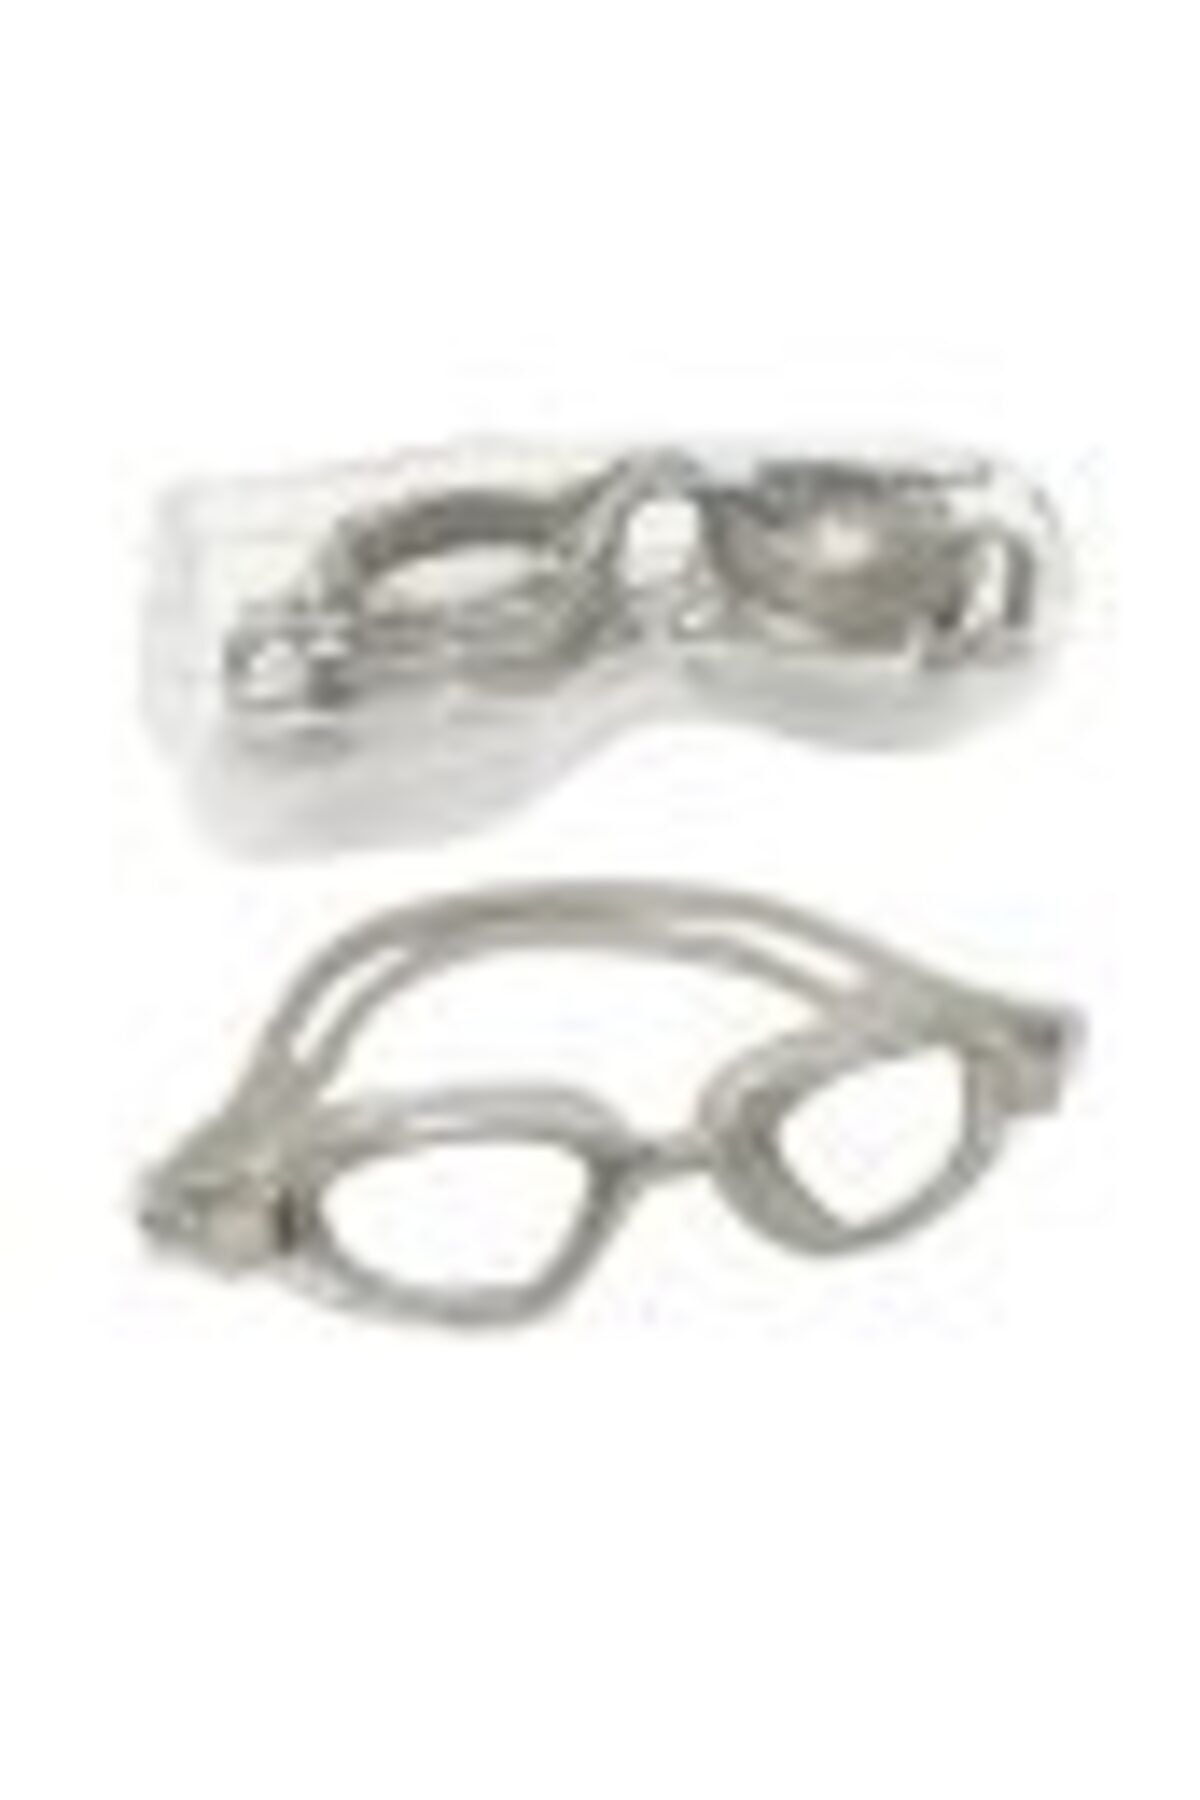 Avessa Yetişkin Yüzücü Gözlüğü - Deniz Gözlüğü  Havuz Gözlüğü - Kadın Erkek Büyük Gözlük